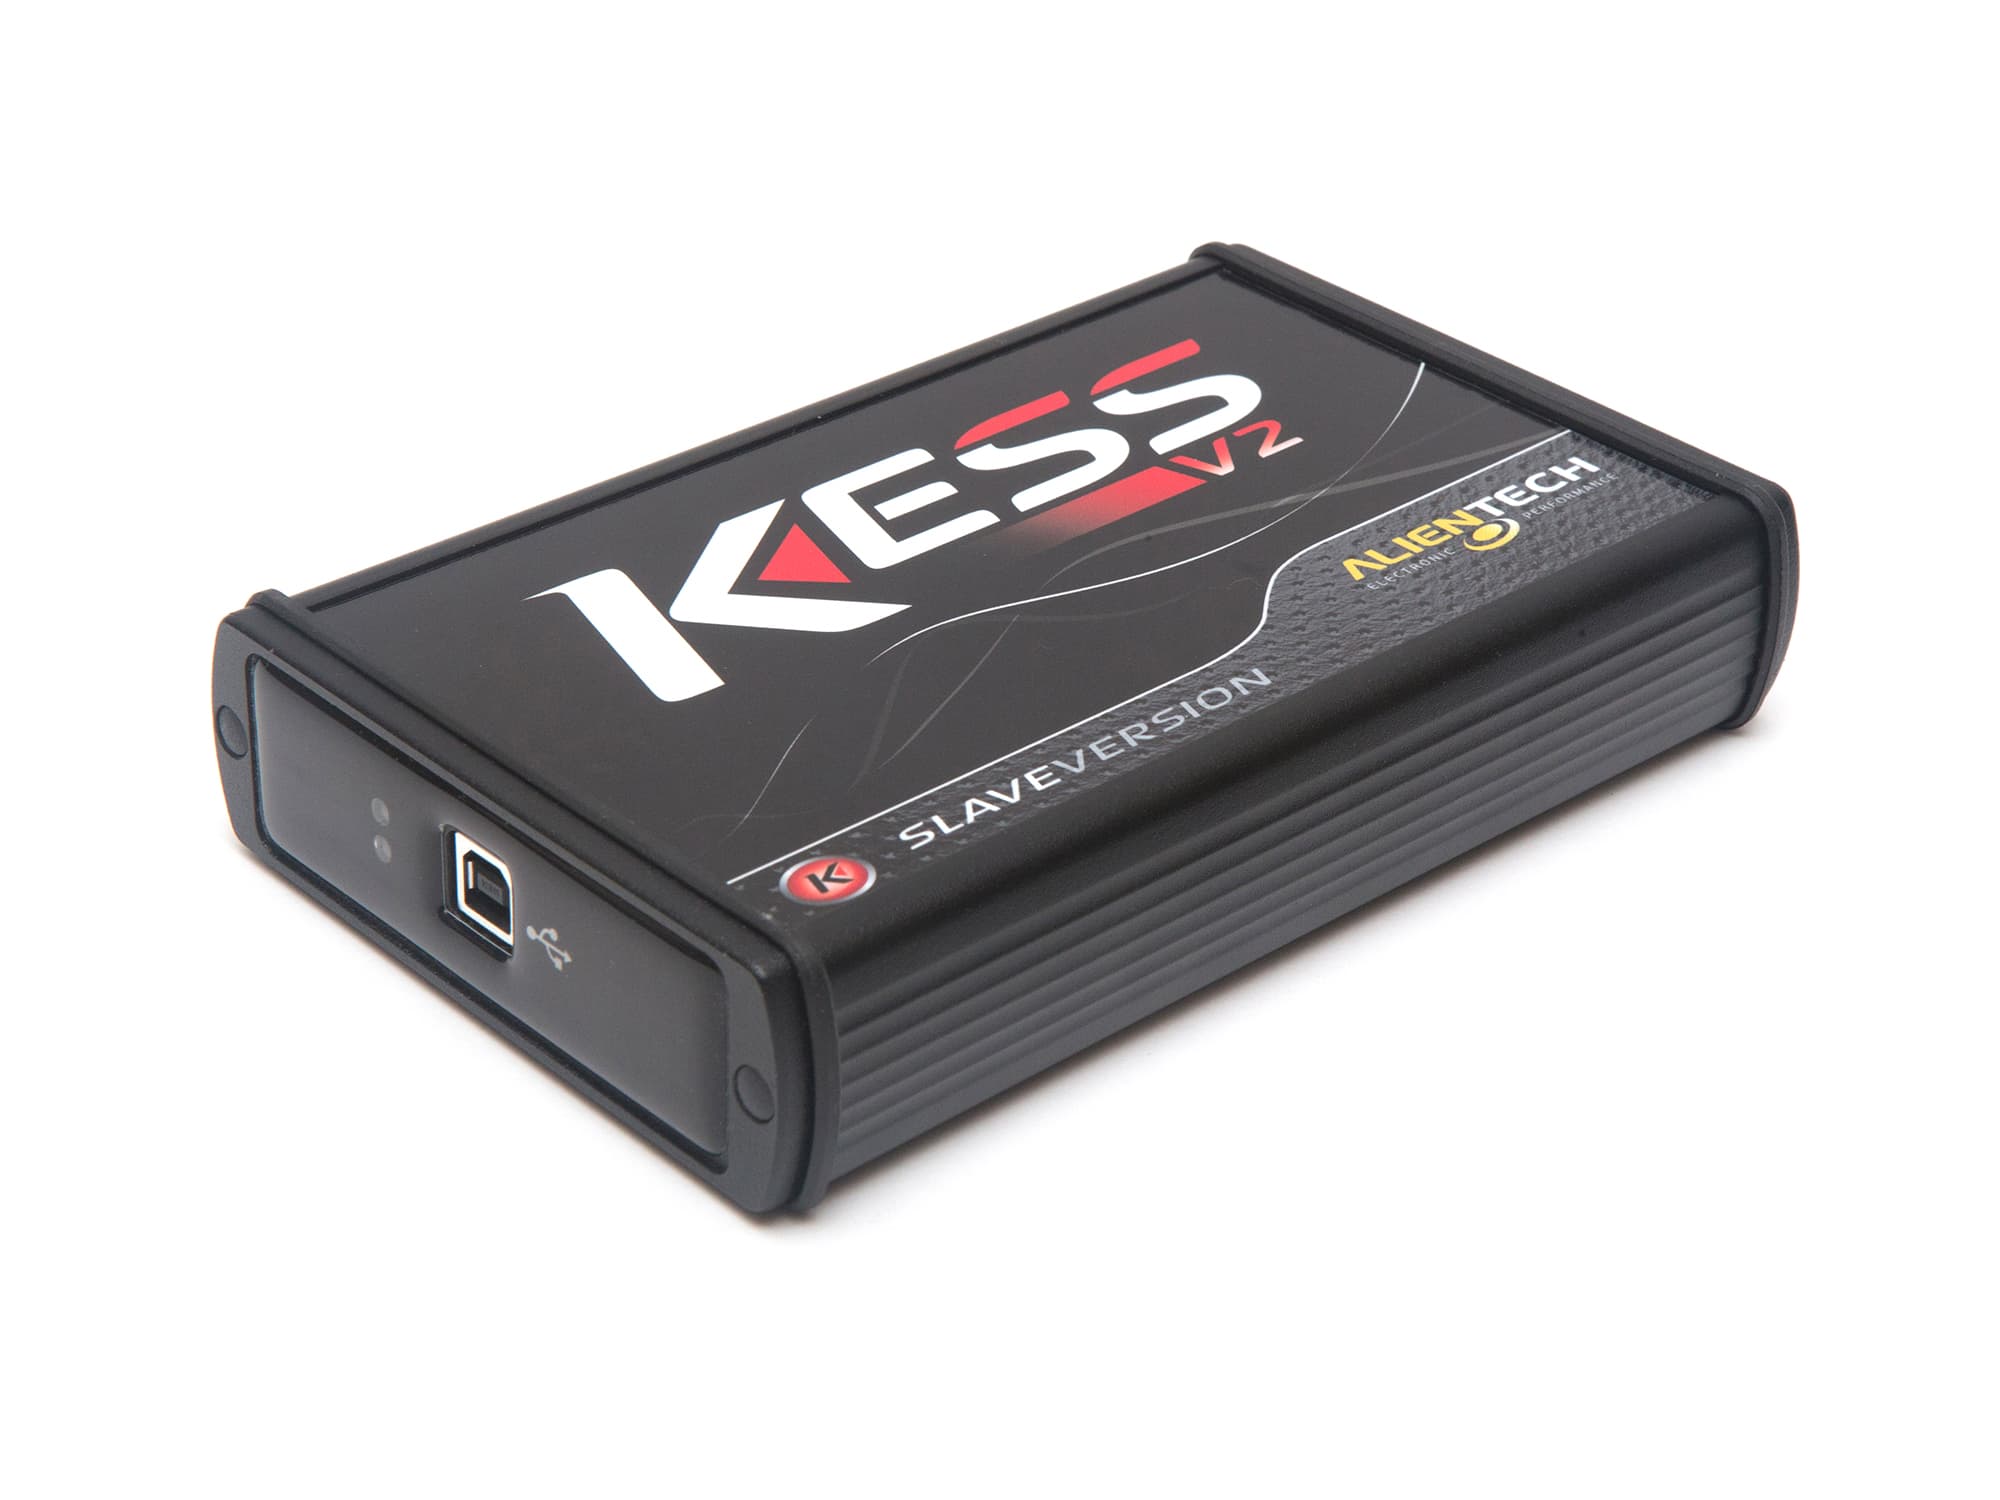 Full Set Online Master Kess V5.017 V2.53+KTAG 7.020 V2.70+LED BDM